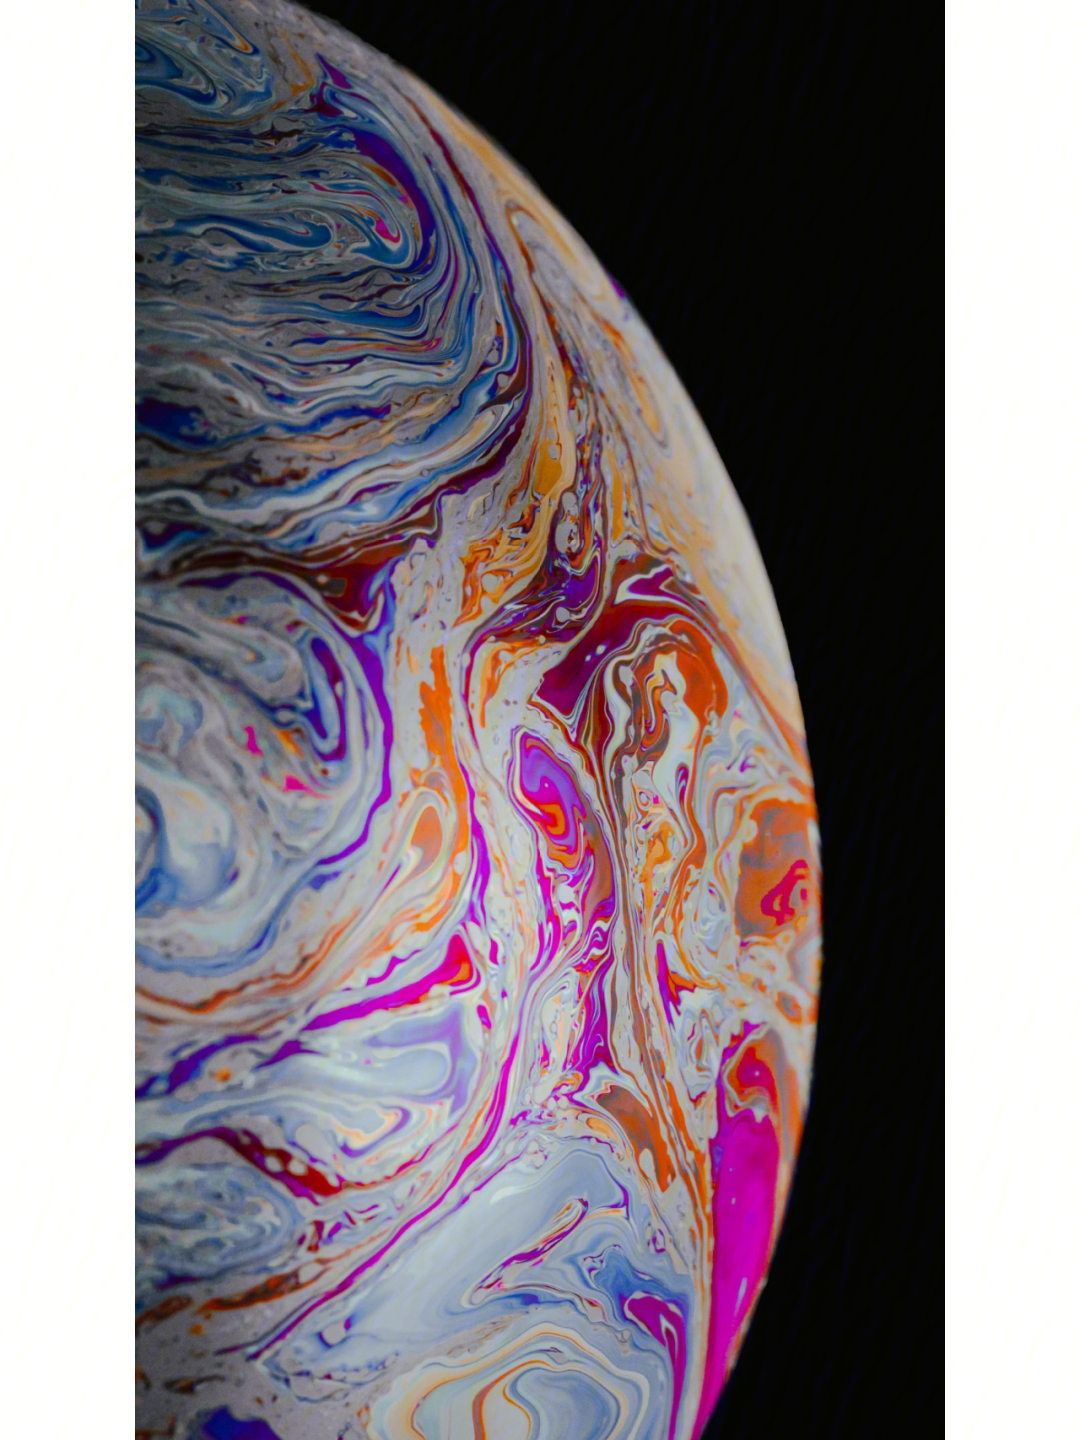 苹果12主界面图片星球图片